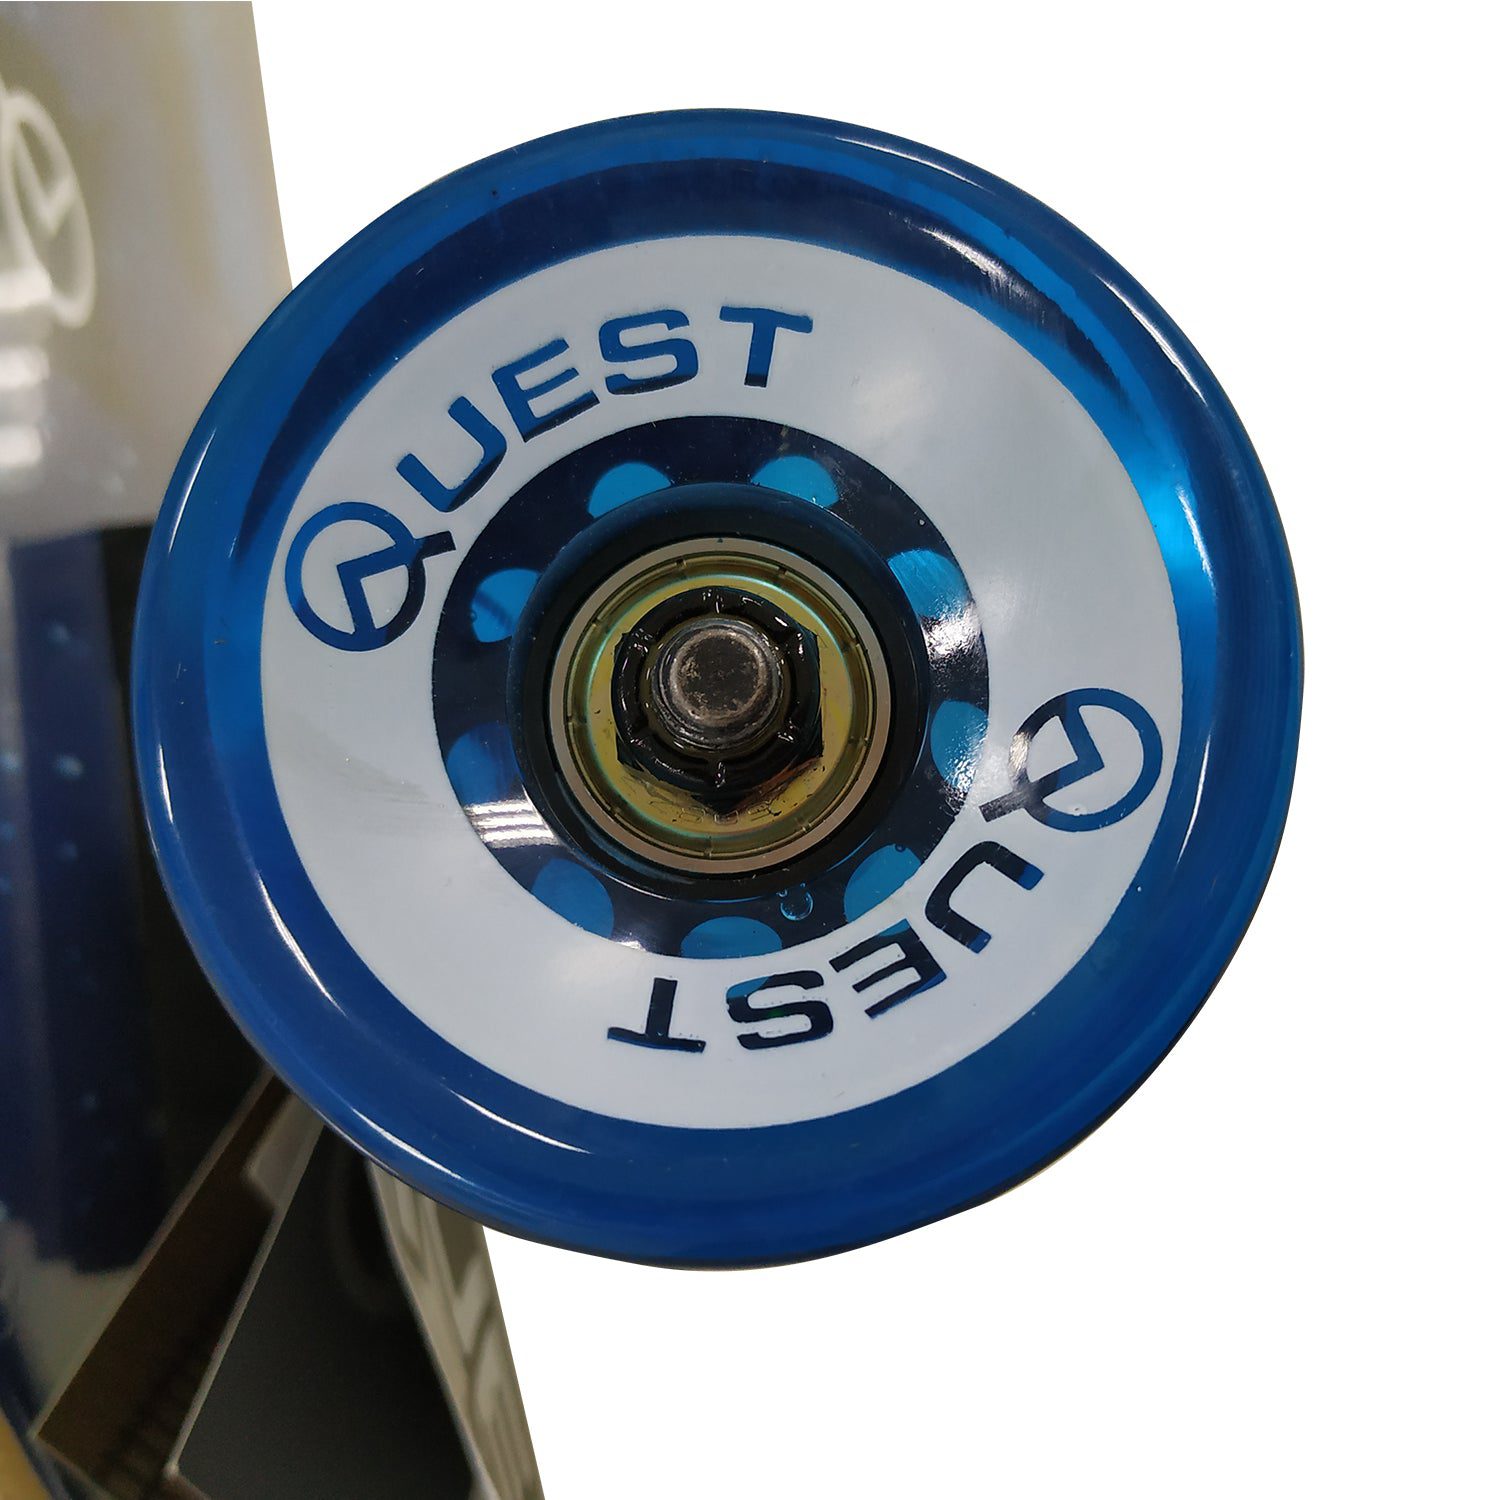 Quest Board Fishtail Longboard wheel